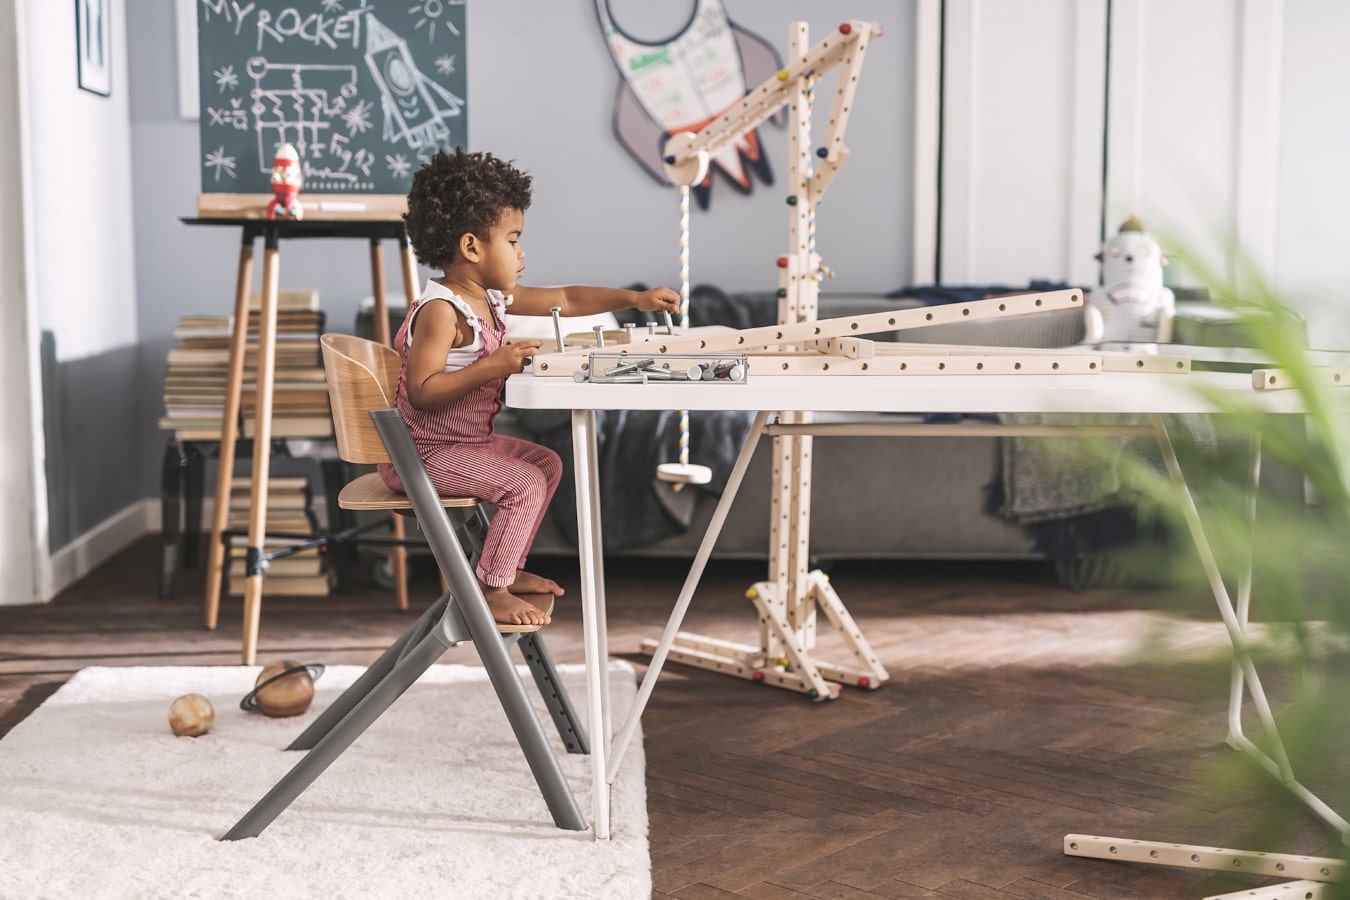 Mały chłopczyk o czarnych włosach buduje konstrukcję z drewna, jest bardzo skupiony, siedzi na krzesełku LIVY Kinderkraft